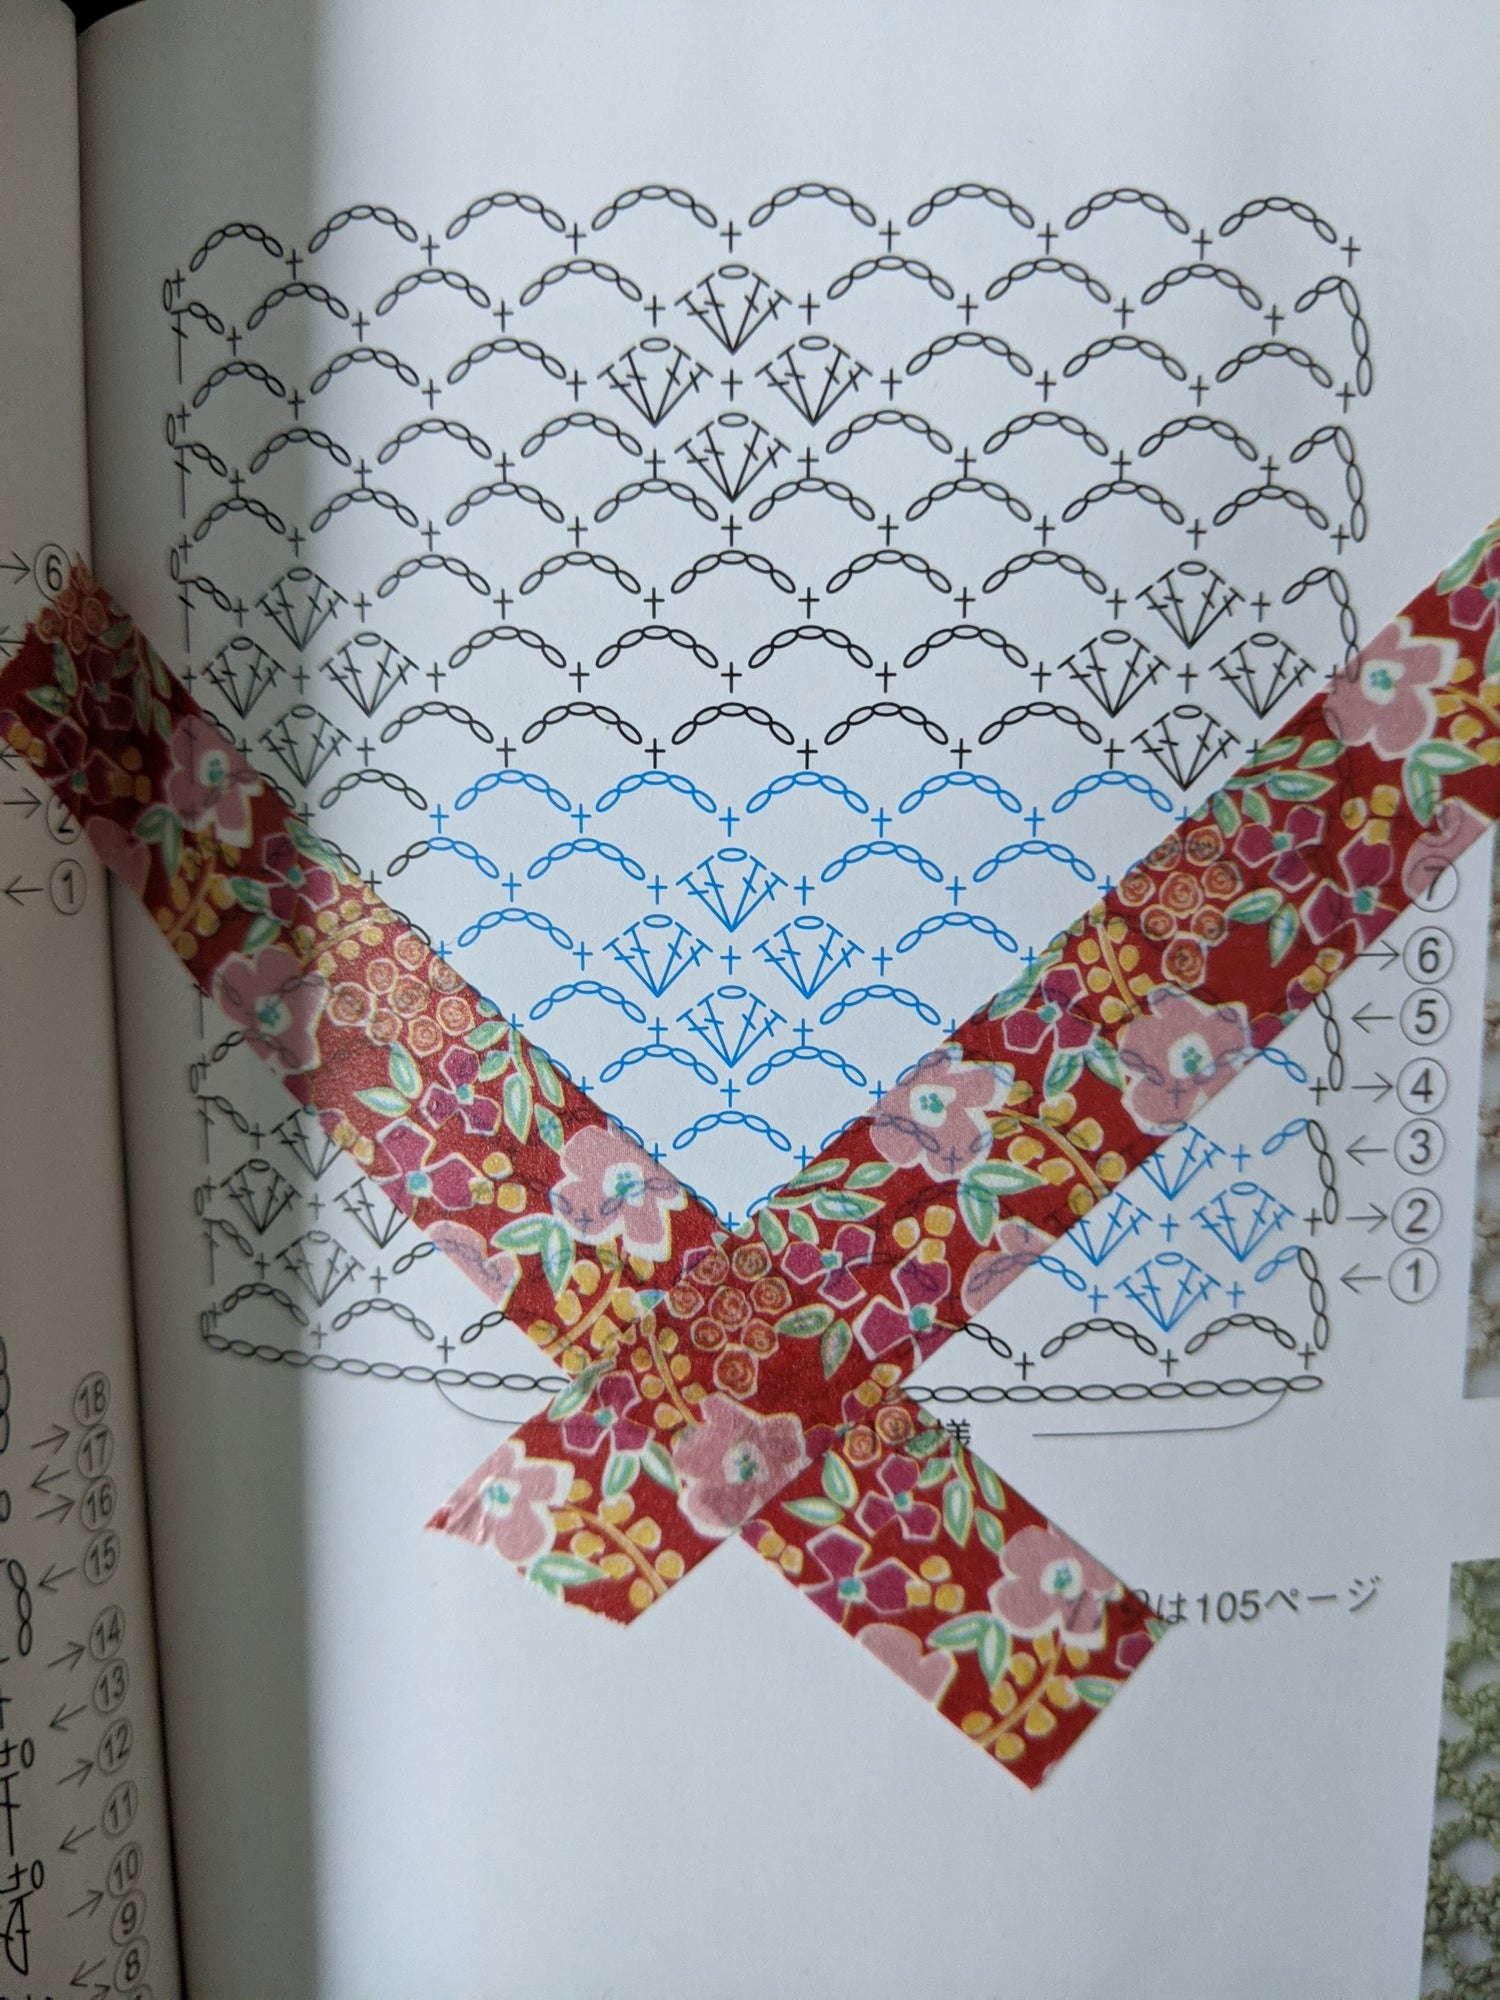 Manipulating Crochet Stitch Patterns - using washi tape